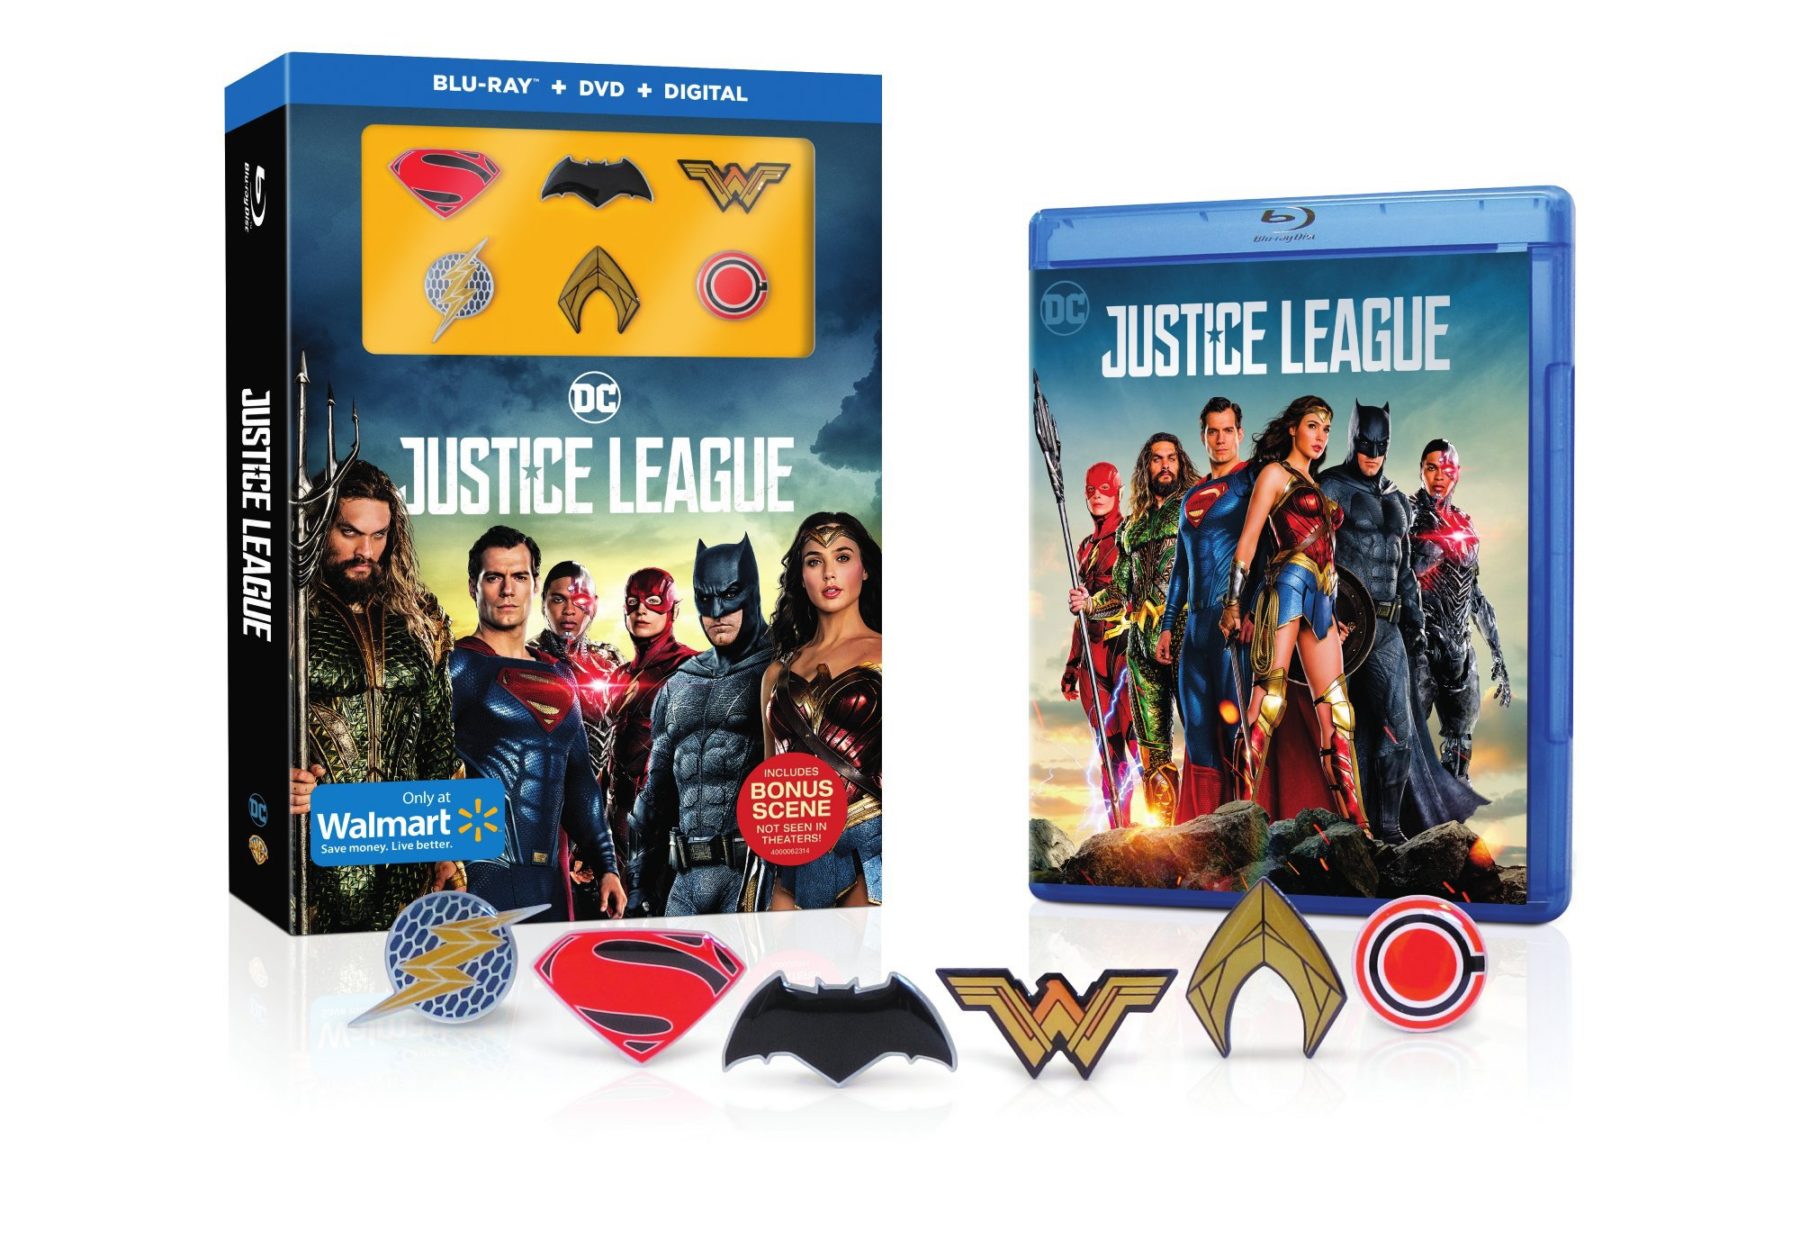 La fecha de lanzamiento de Justice League Blu-ray y detalles especiales revelados, incluye una escena adicional